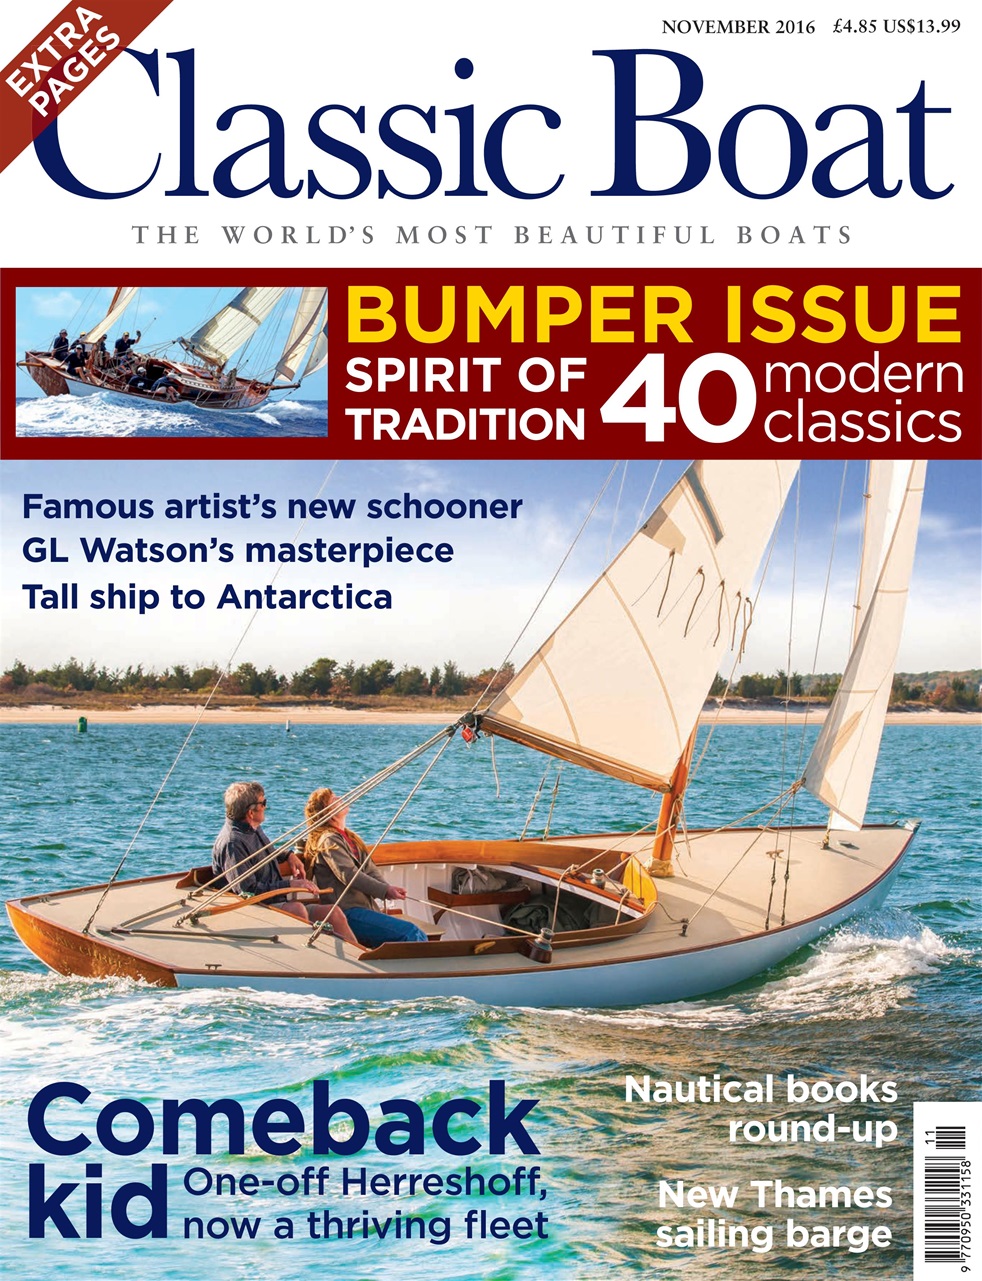 Classic Boat Magazine November Back Issue